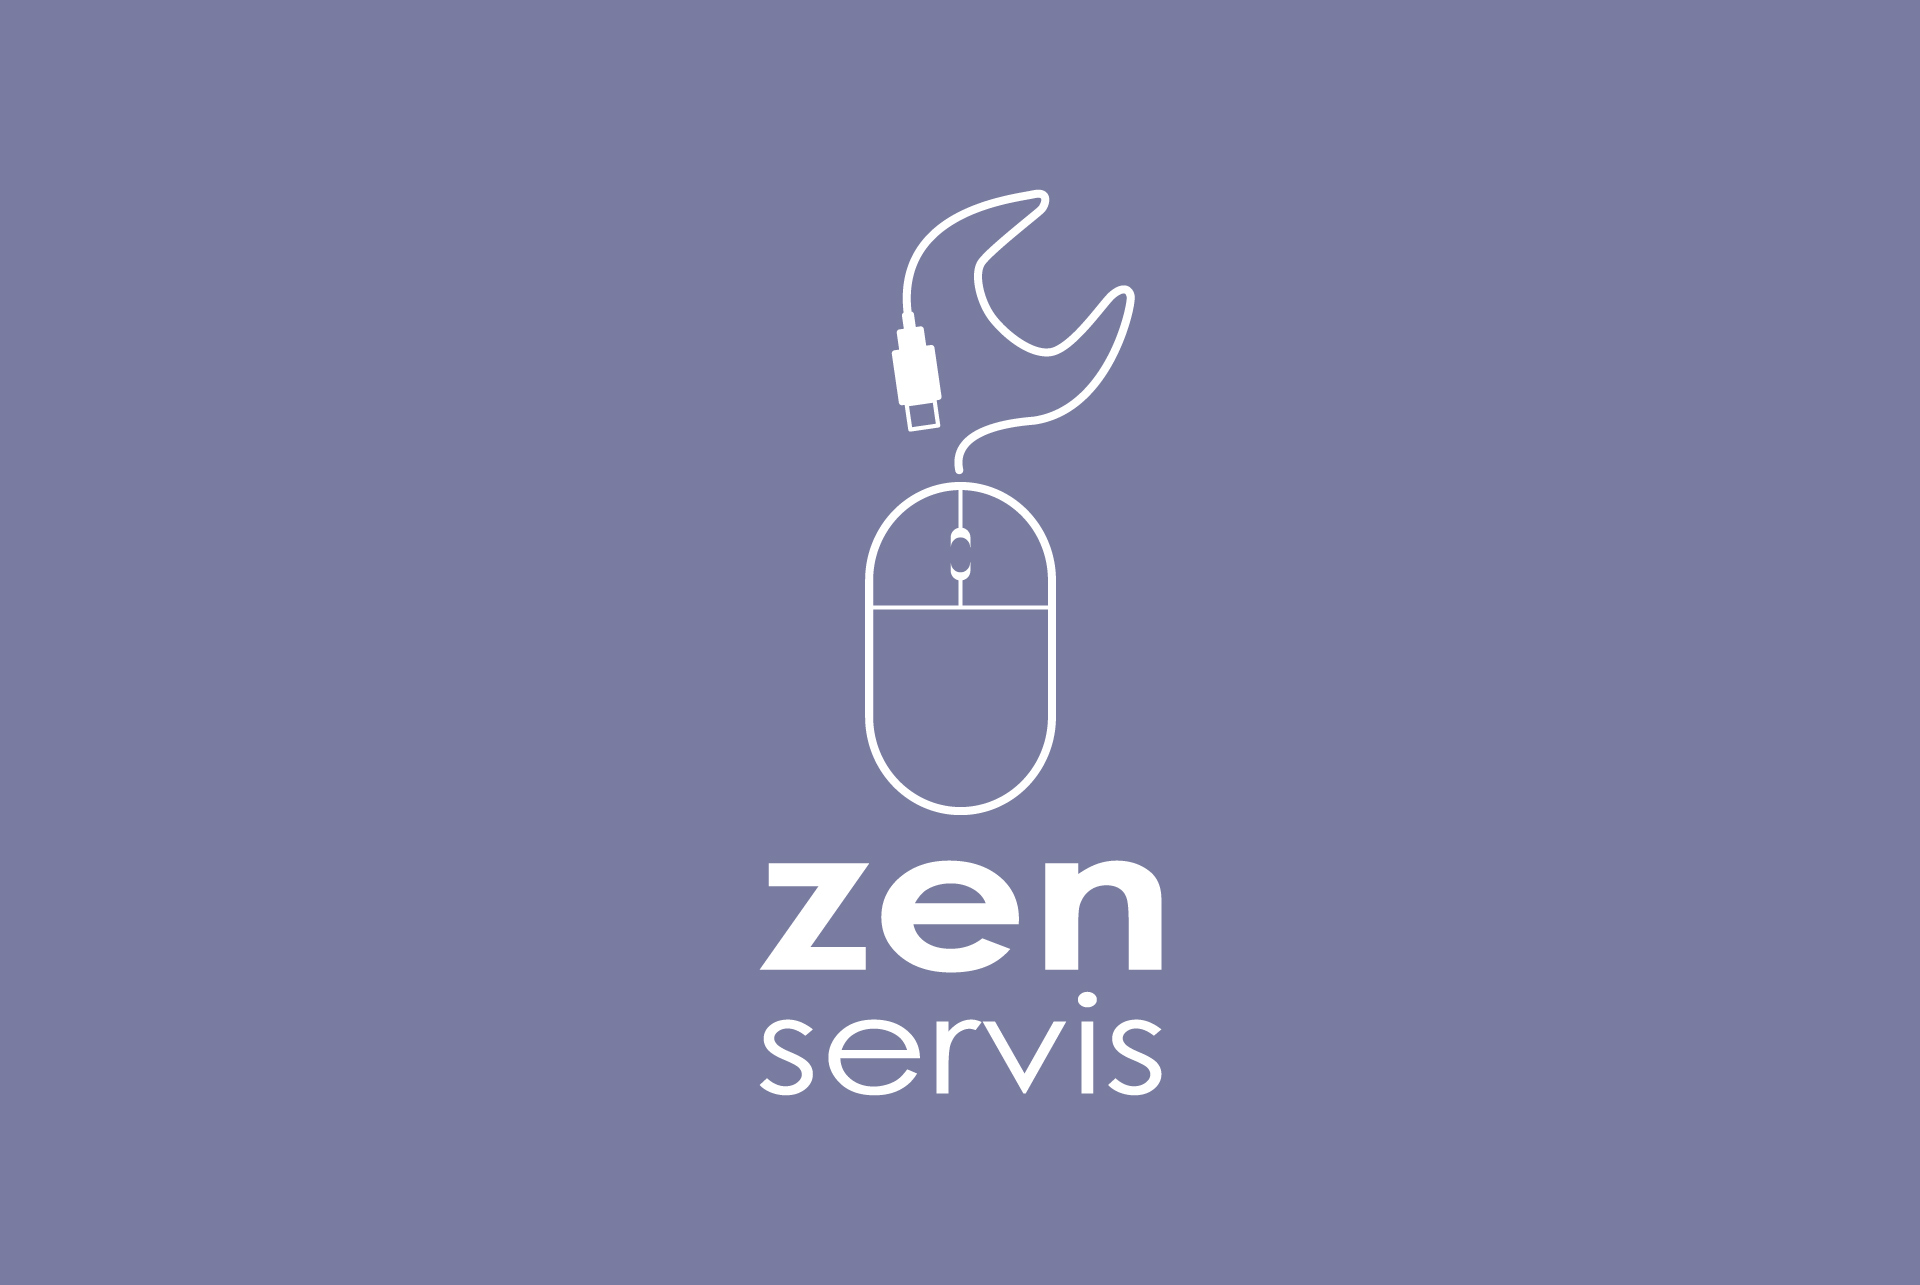 Zen service